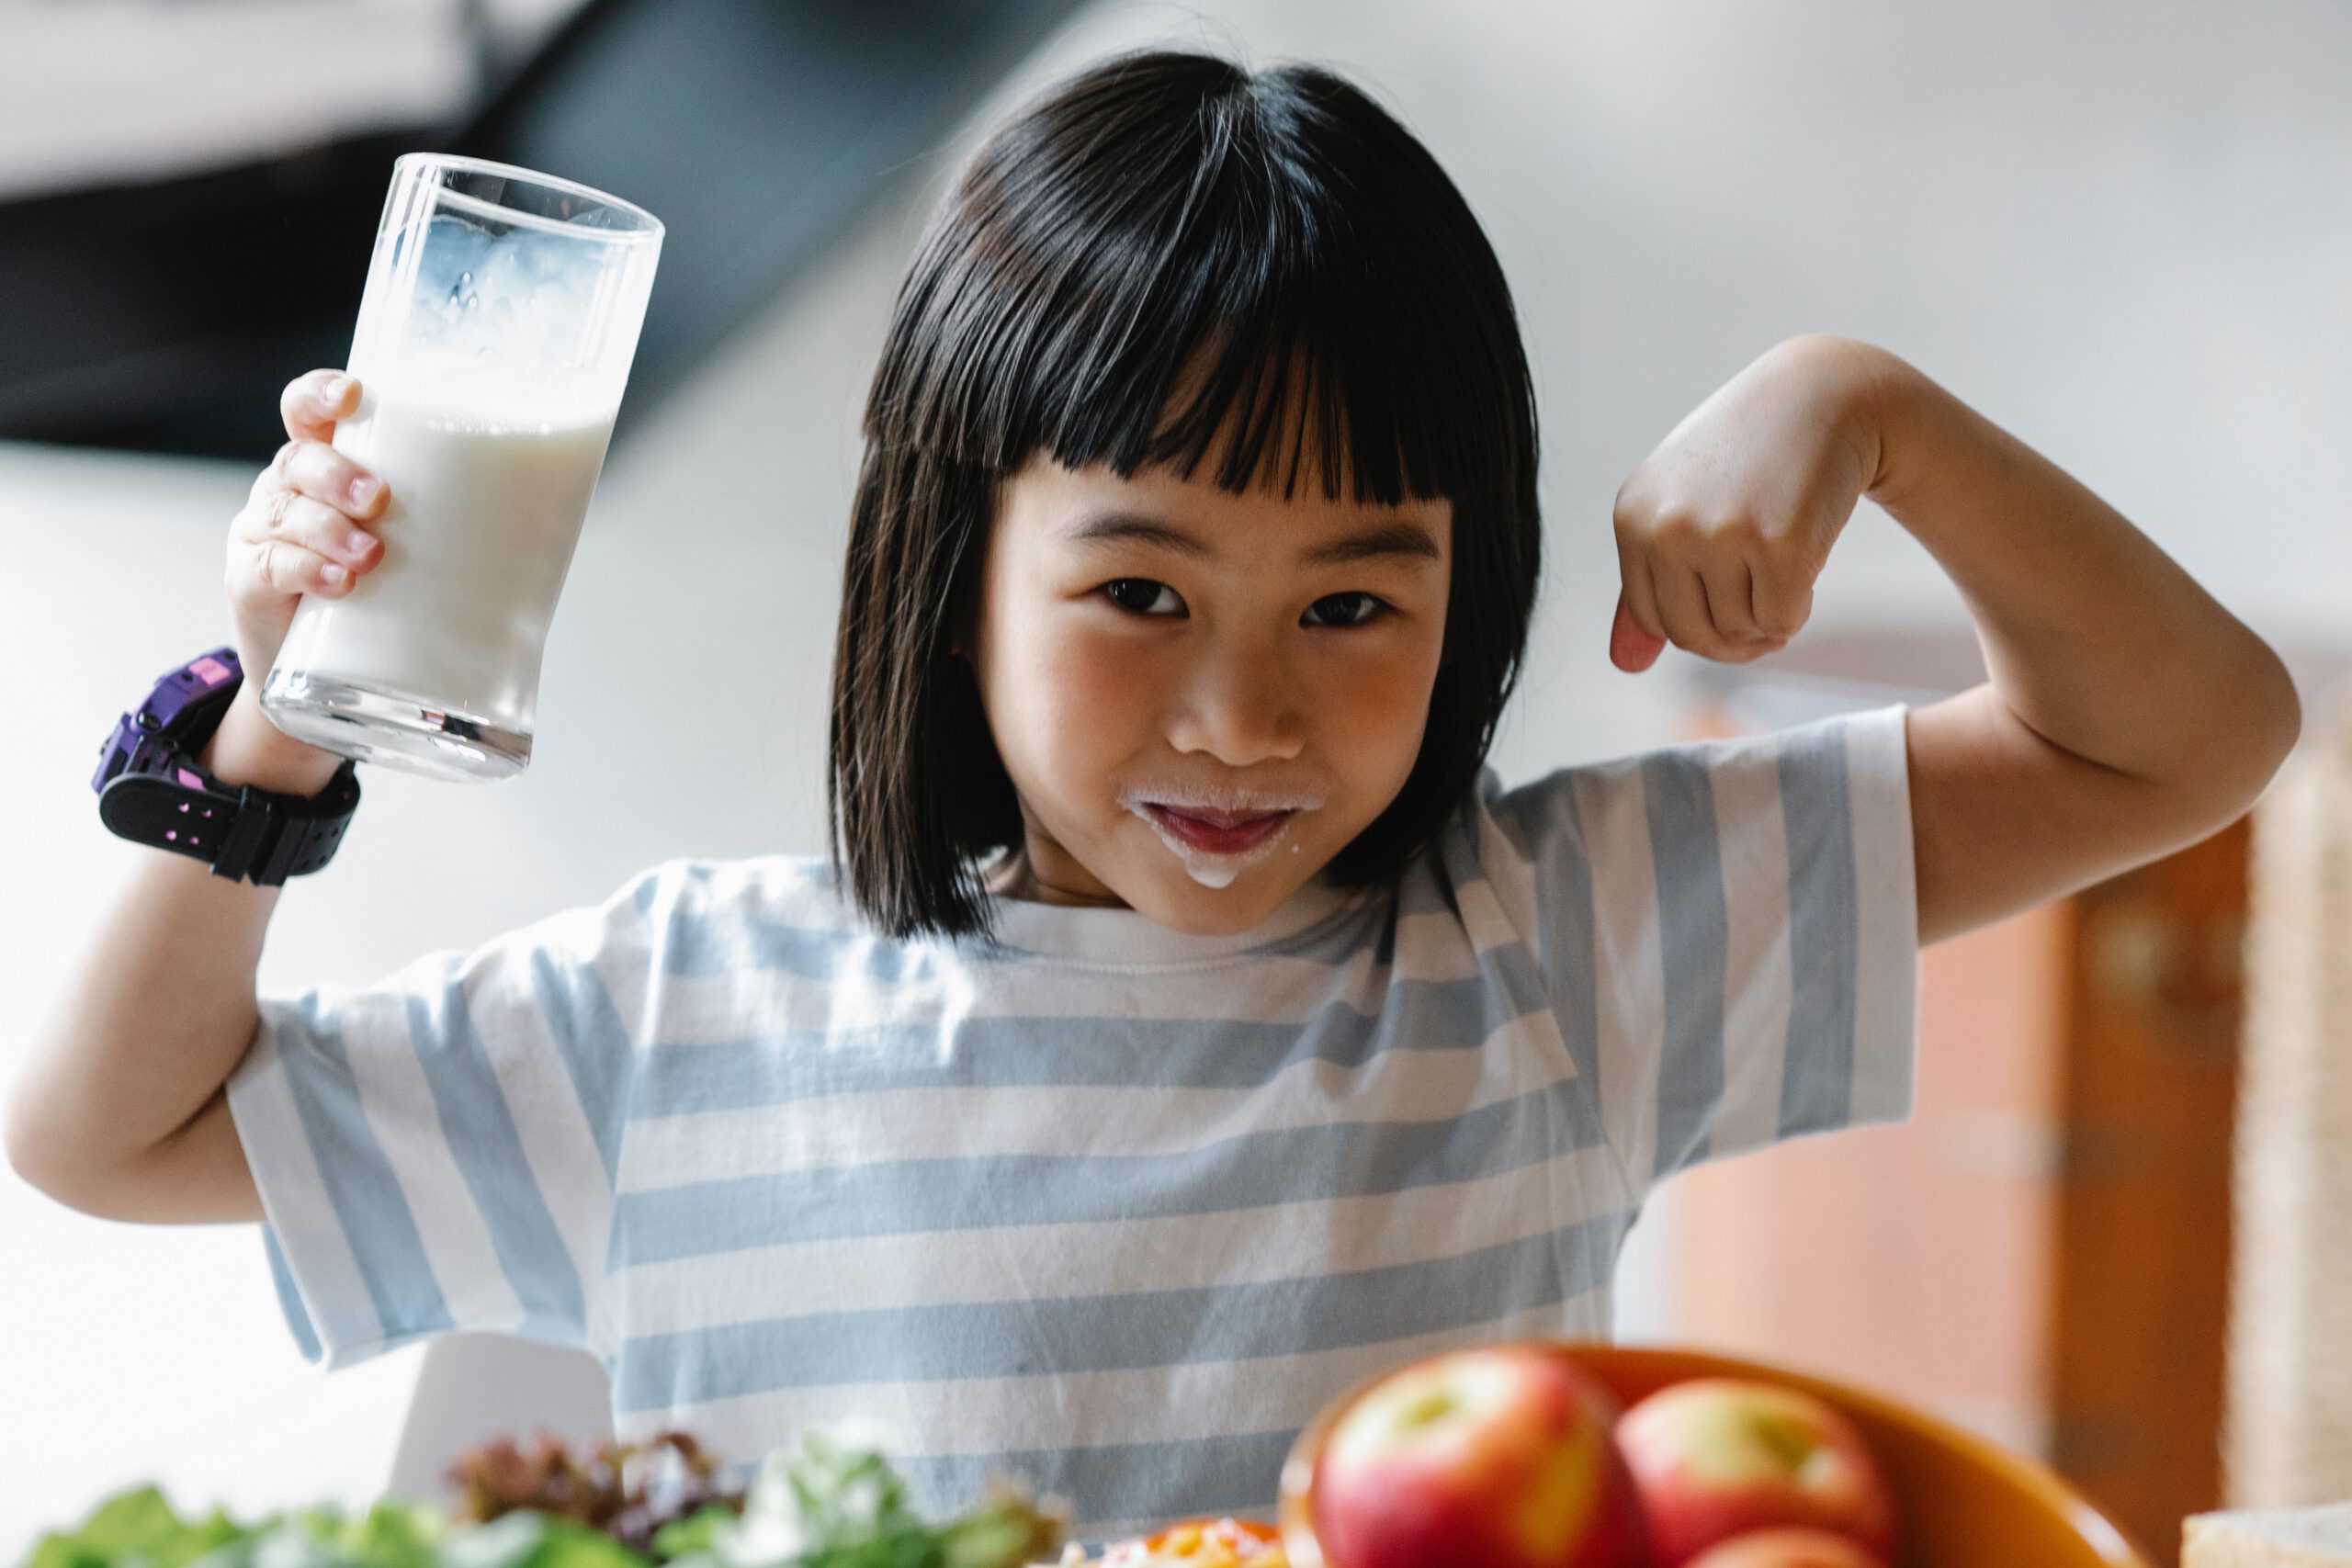 Mała dziewczynka siedząca przy stole ze szklanka mleka w ręce i wąsami od napoju wokół ust